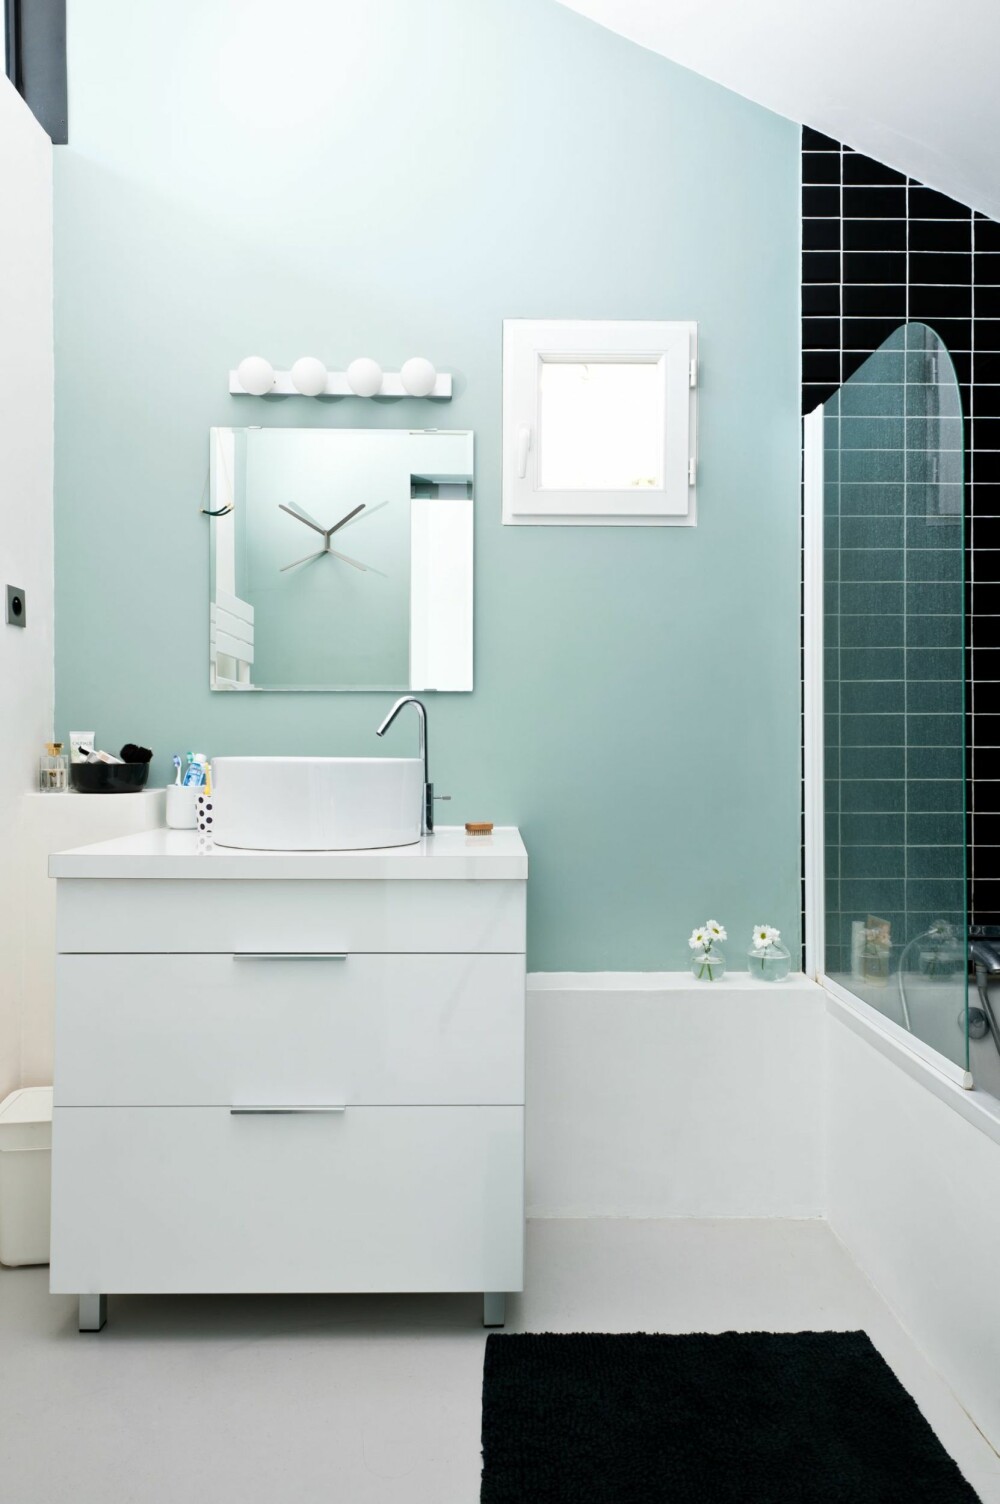 PÅ BADET: Badet er lite, men stilig med svarte fliser og himmelblå vegg. Baderomsinnredning fra Ikea og Leroy Merlin.